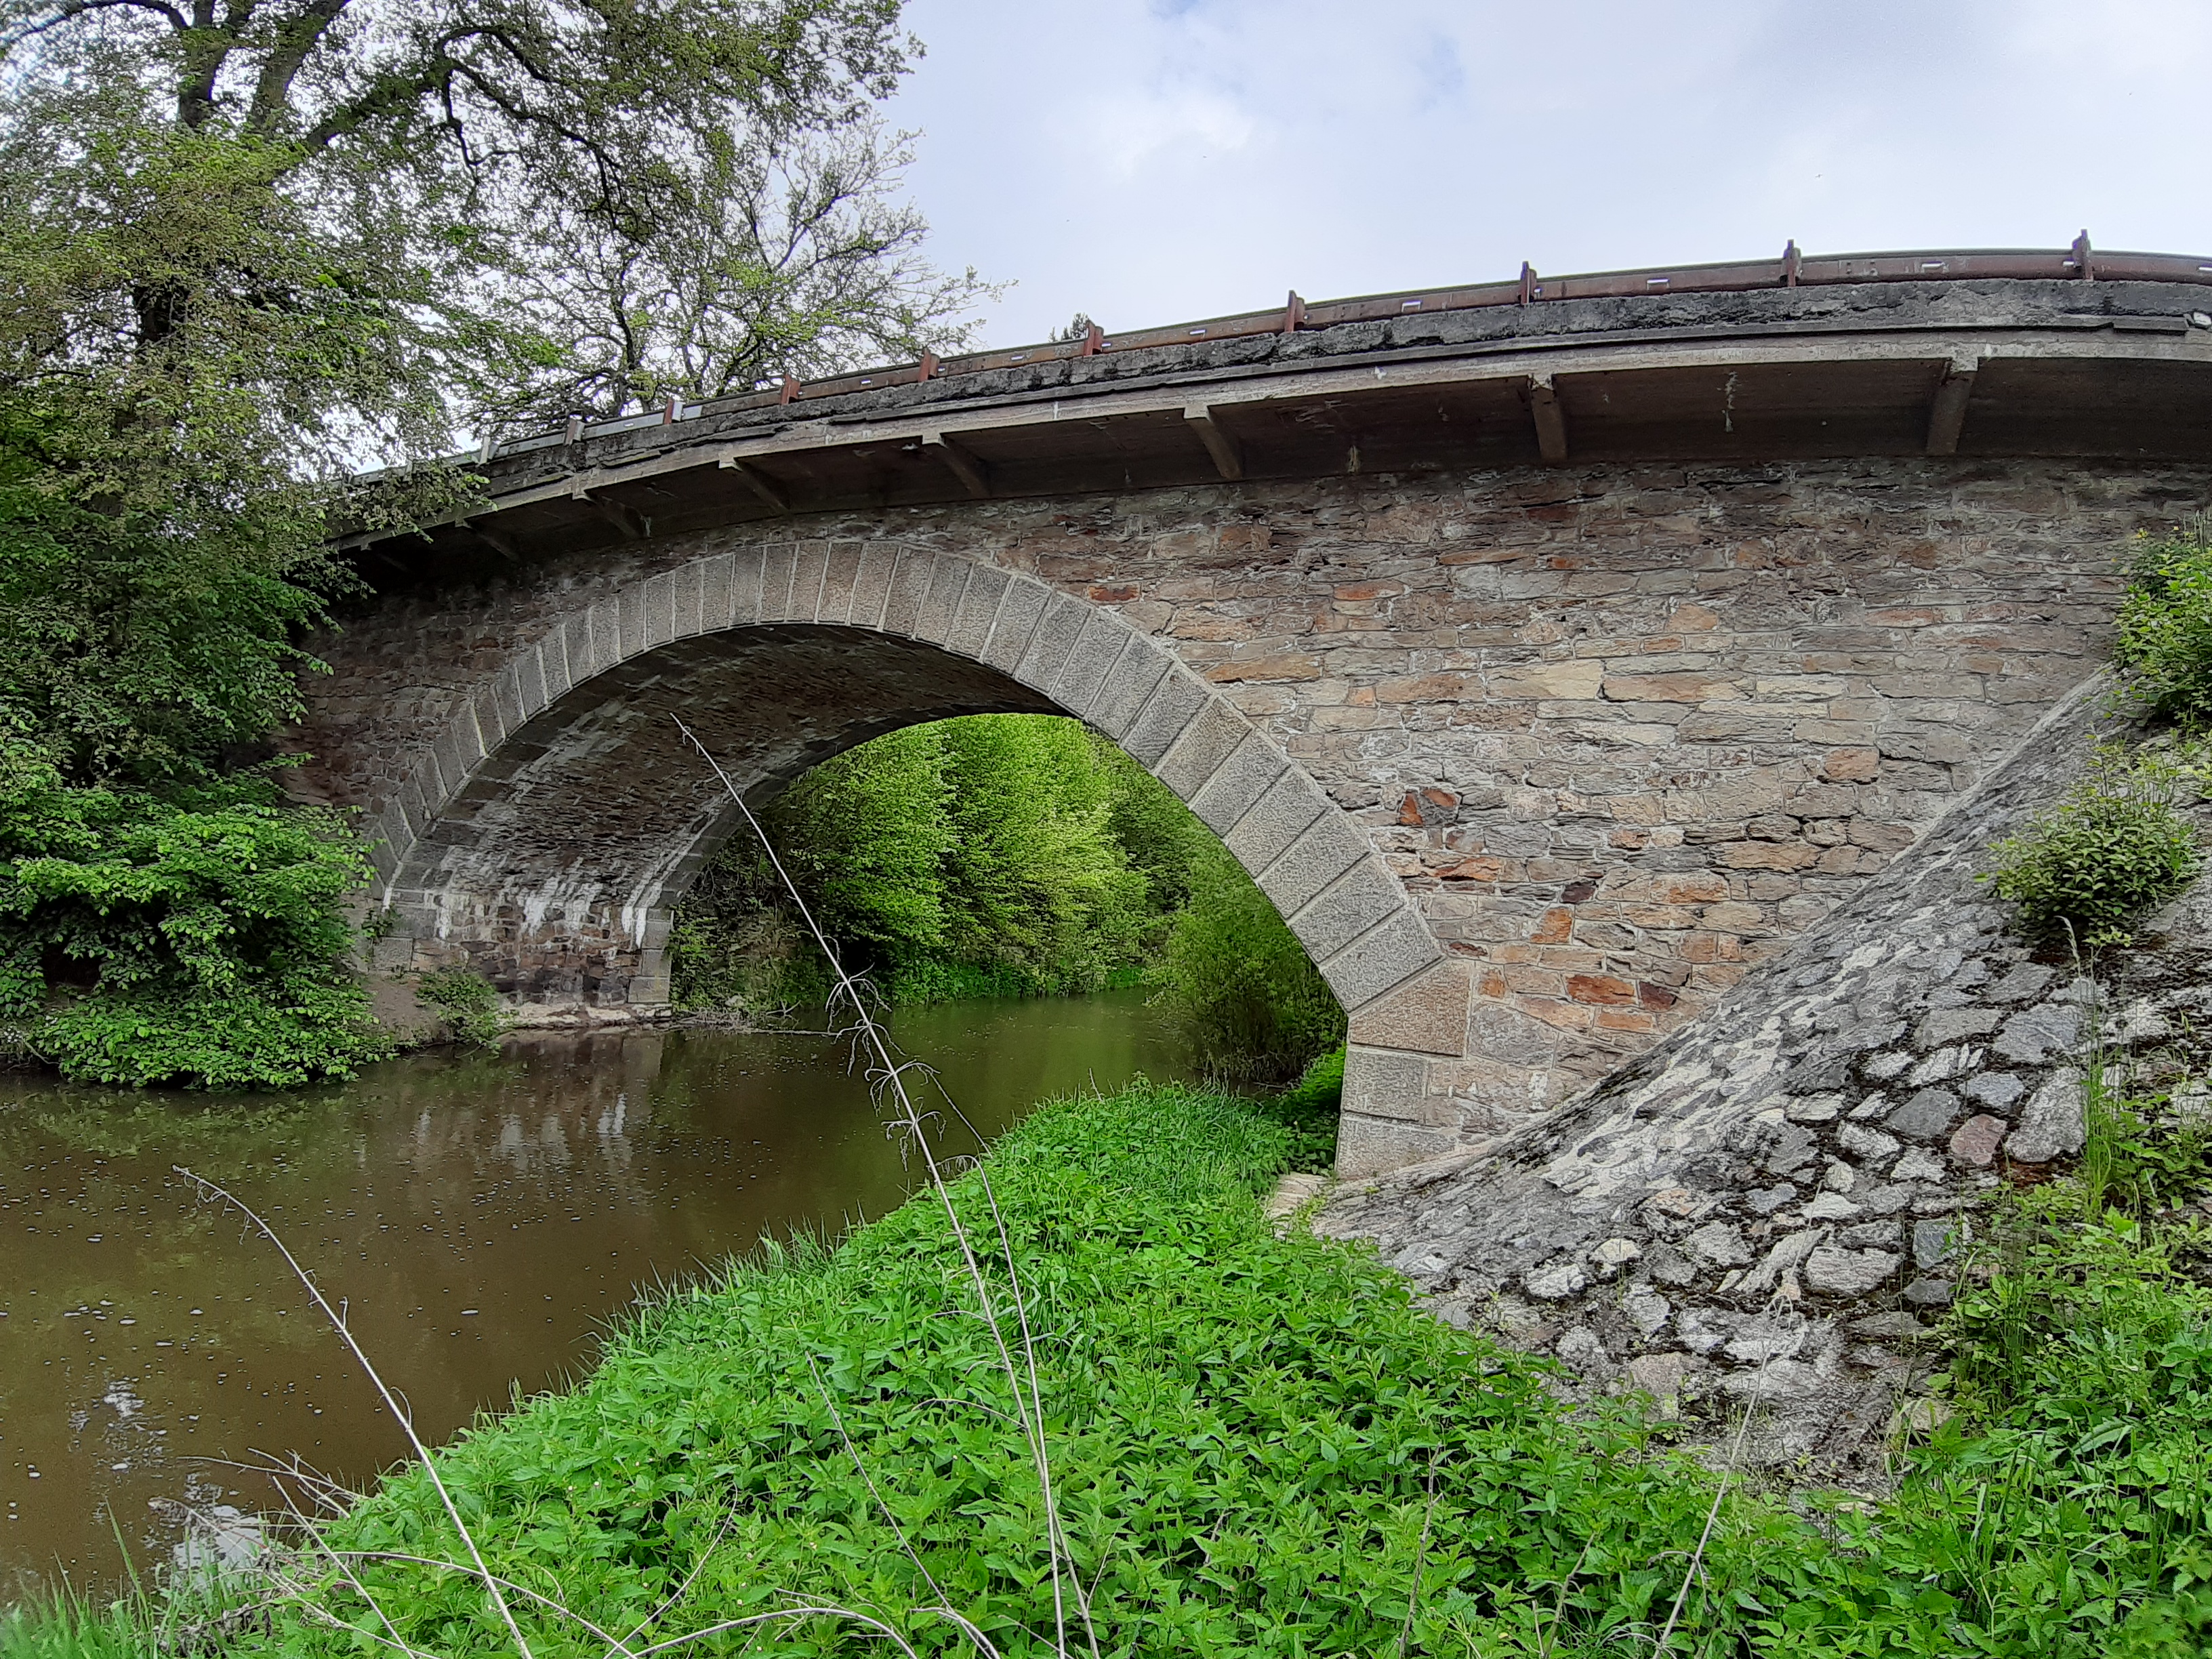 Výstavba mostu přes říčku Smutná za Bechyní a demolice původního mostu   - Inženýrské stavby